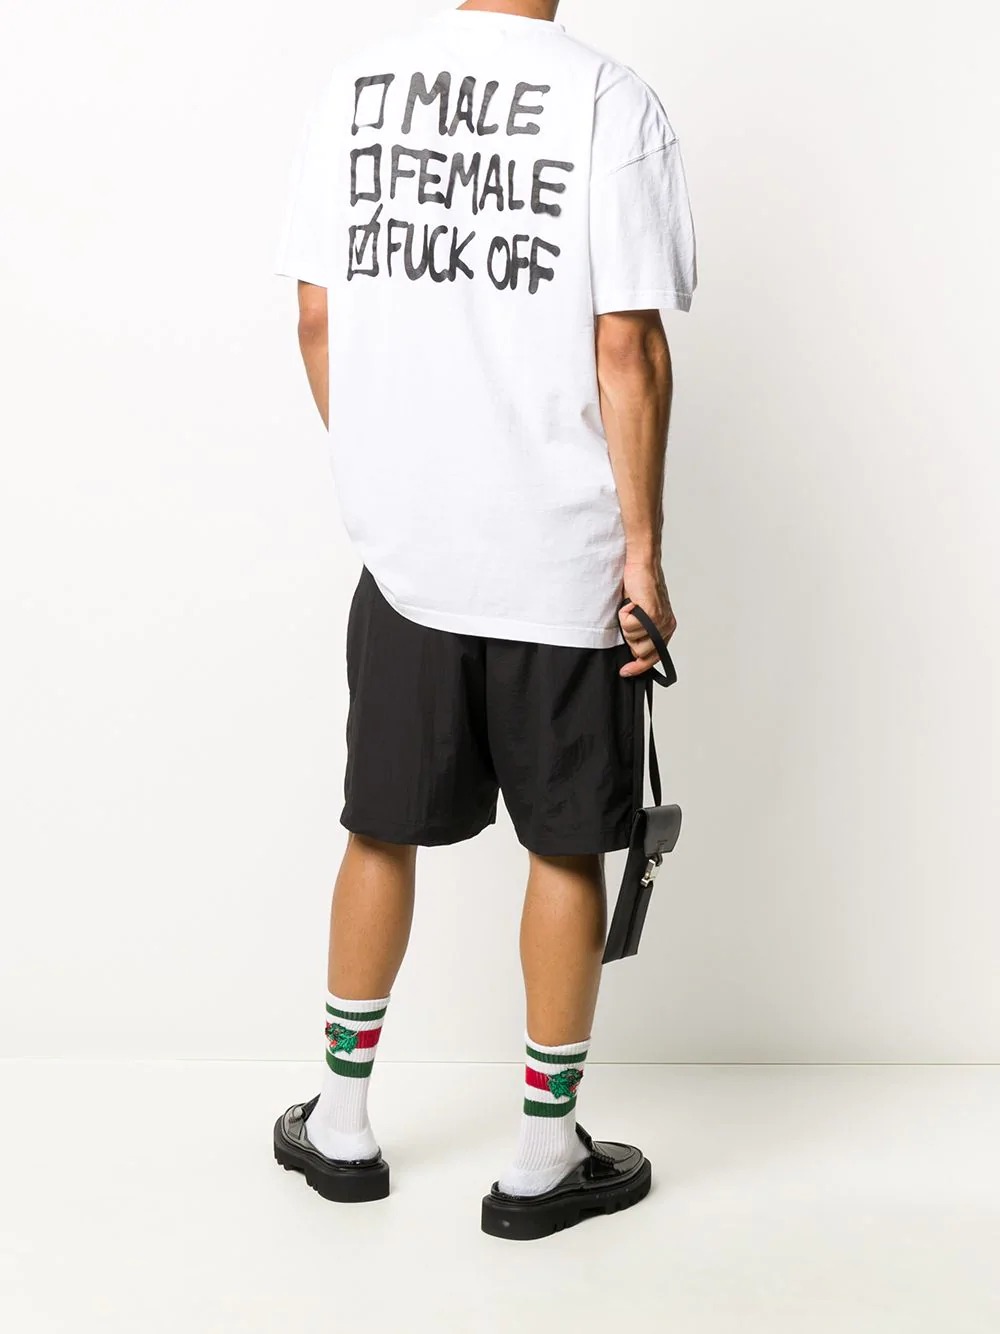 思わず目を引く メンズにおすすめのバックプリントtシャツ10選 メンズファッションメディア Otokomae 男前研究所